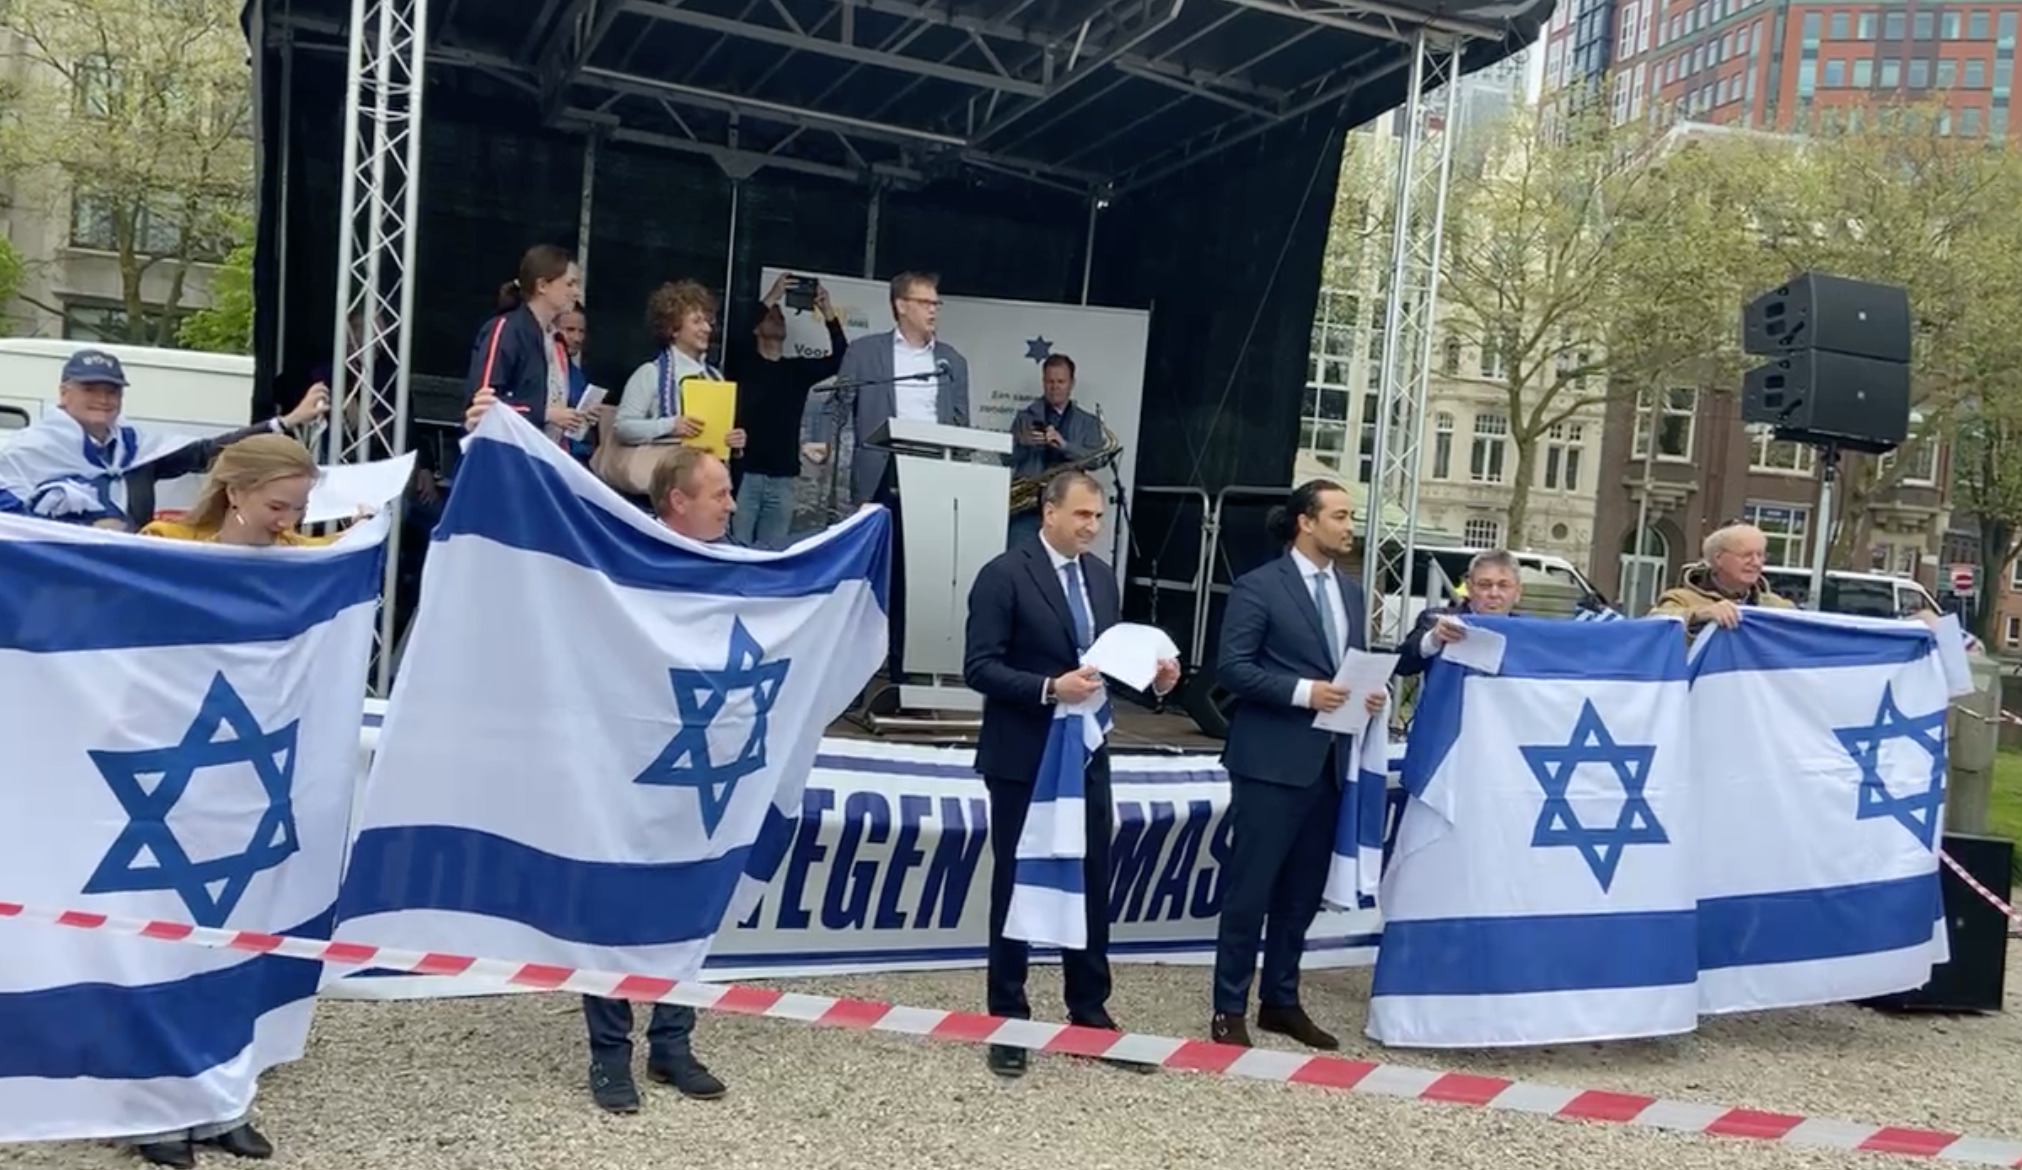 Hoe is de steun voor Israël onder Nederlanders zo afgebrokkeld? – achtergrond